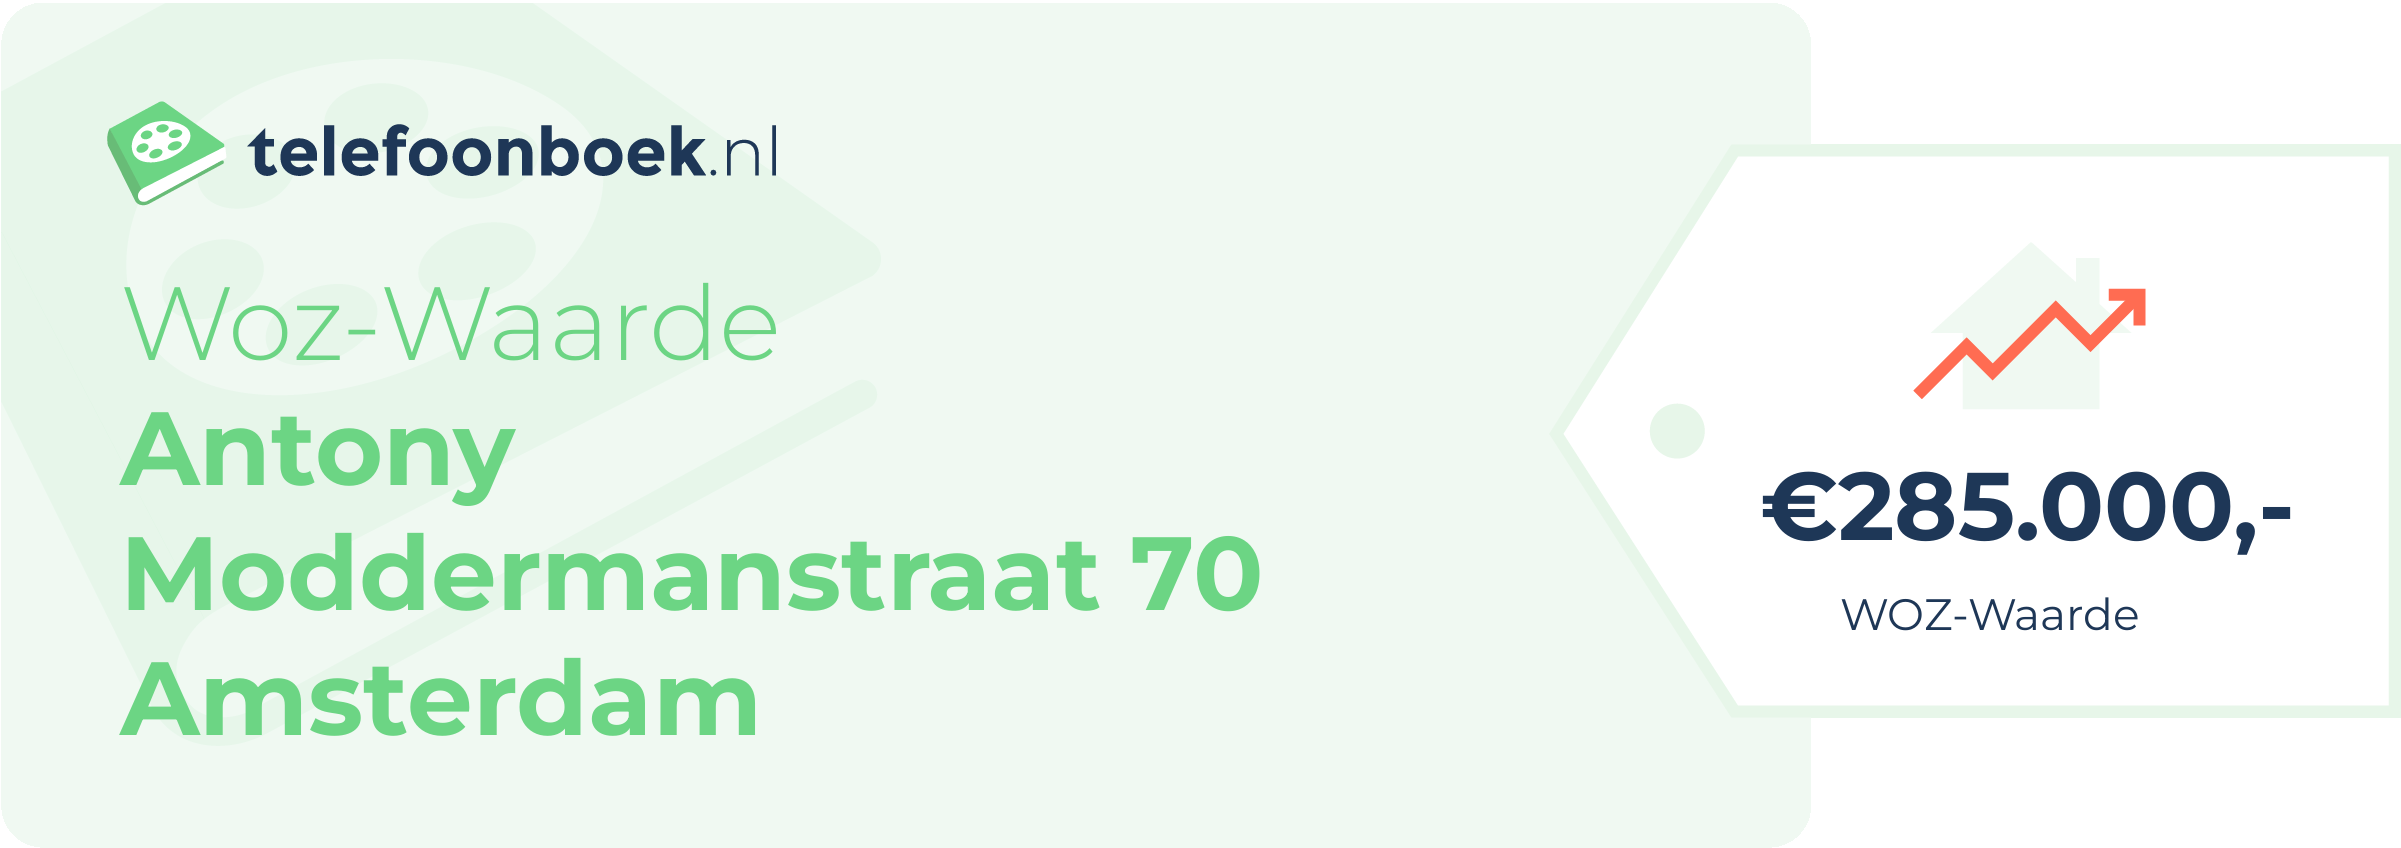 WOZ-waarde Antony Moddermanstraat 70 Amsterdam